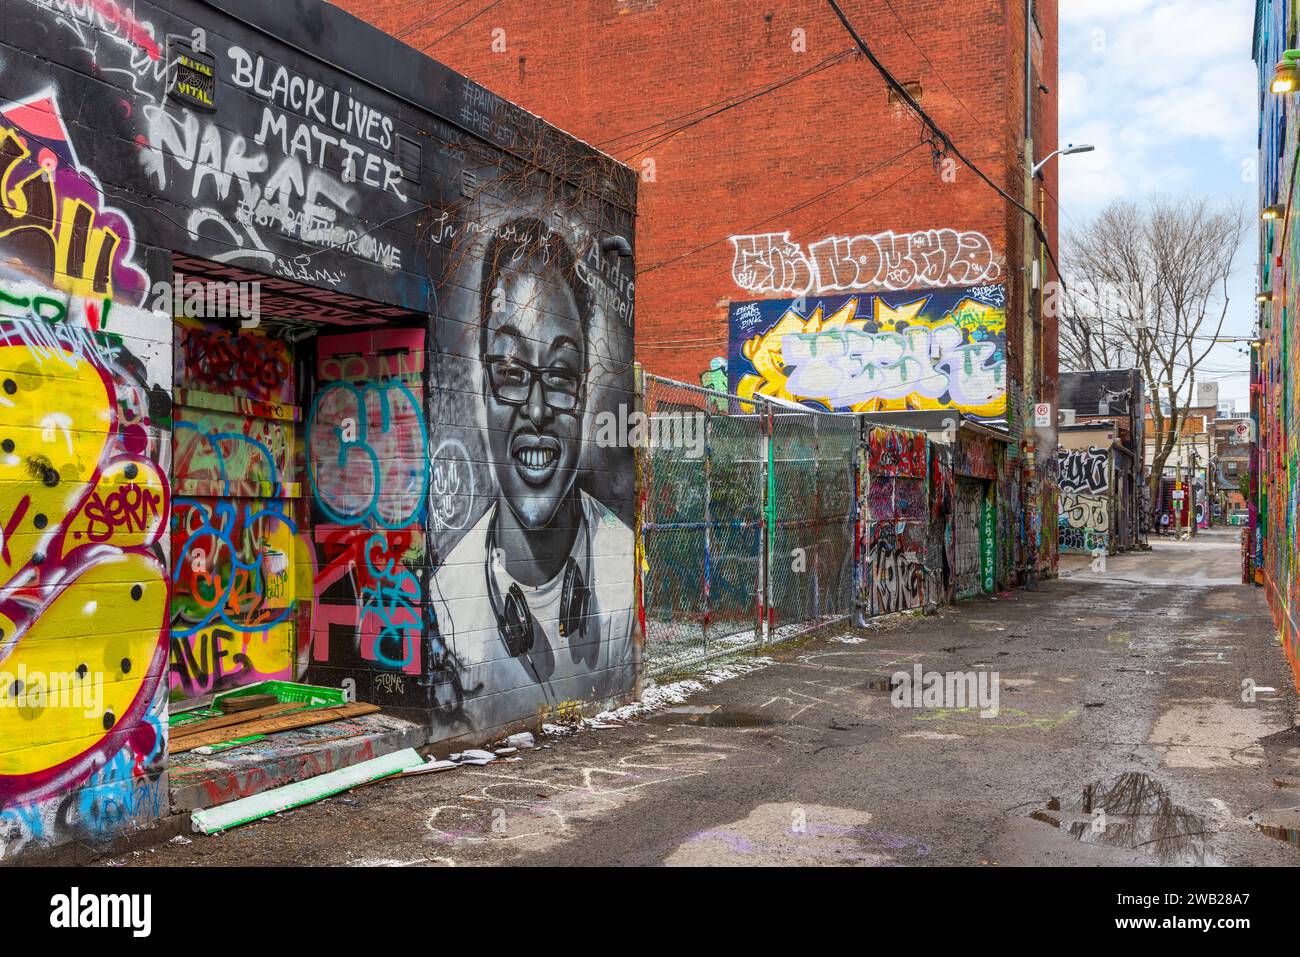 Graffiti Alley, noto anche come Rush Lane, è una gemma nascosta nel quartiere della moda di Toronto. E' un vicolo stretto fiancheggiato da murales colorati e strade Foto Stock